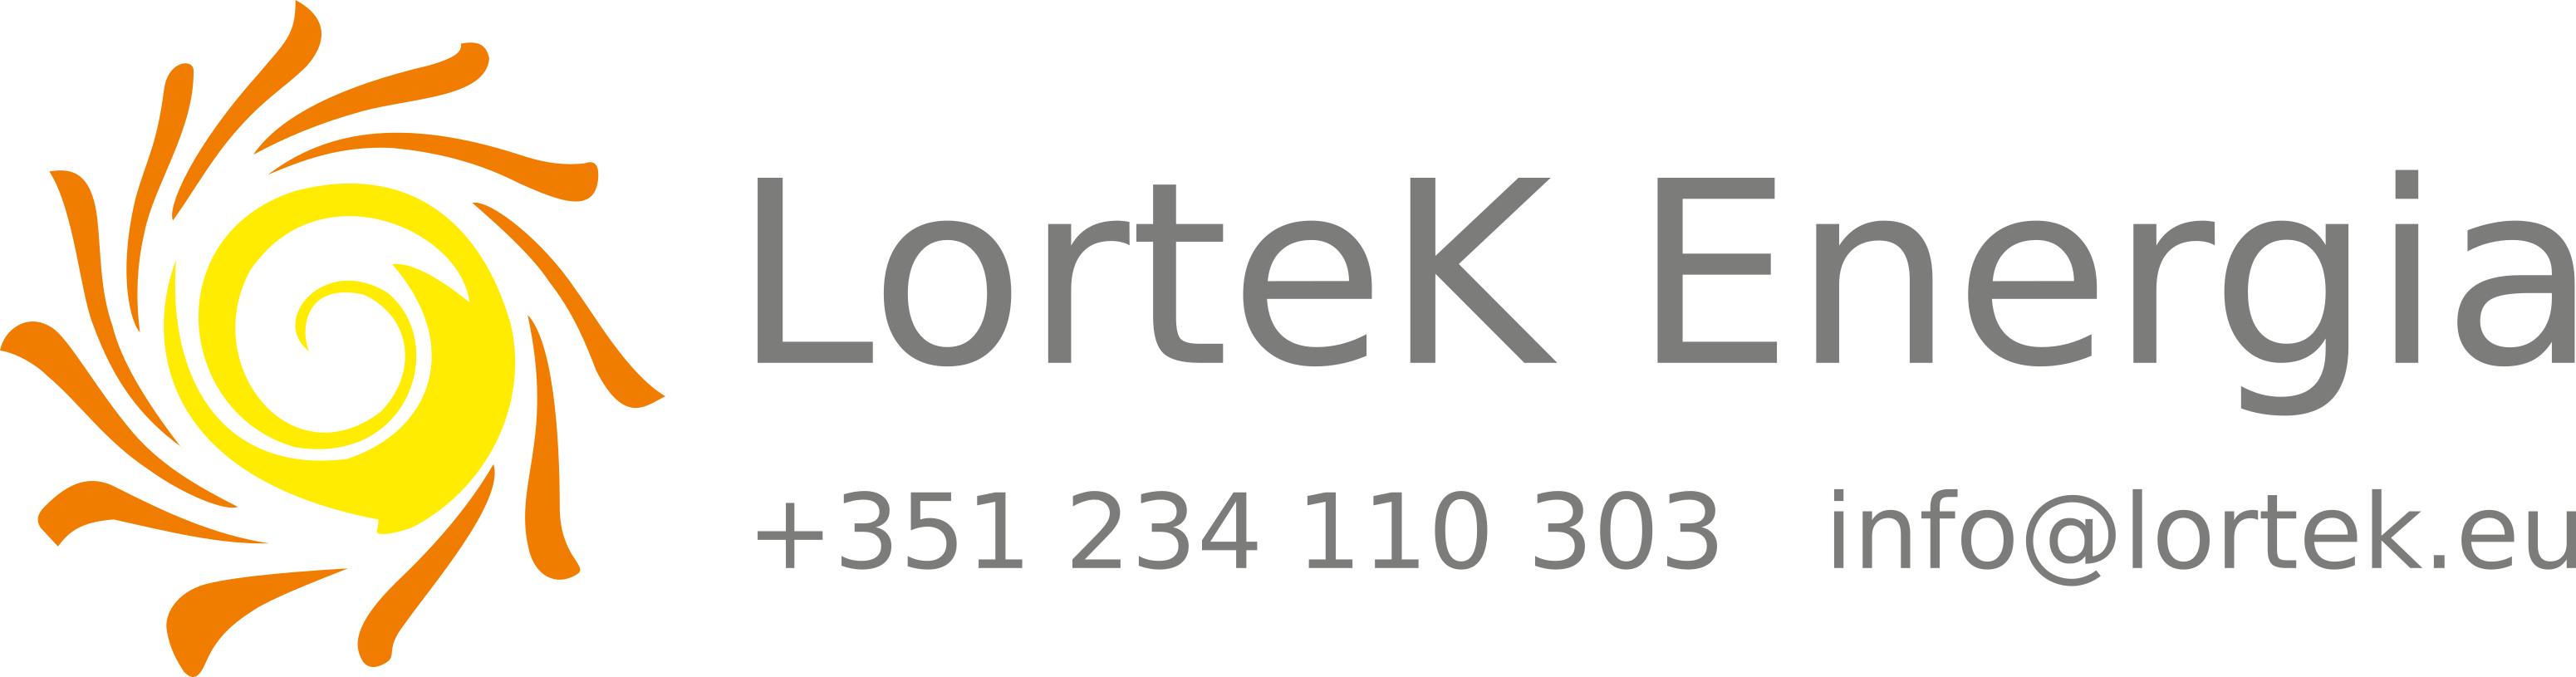 lortek-logo